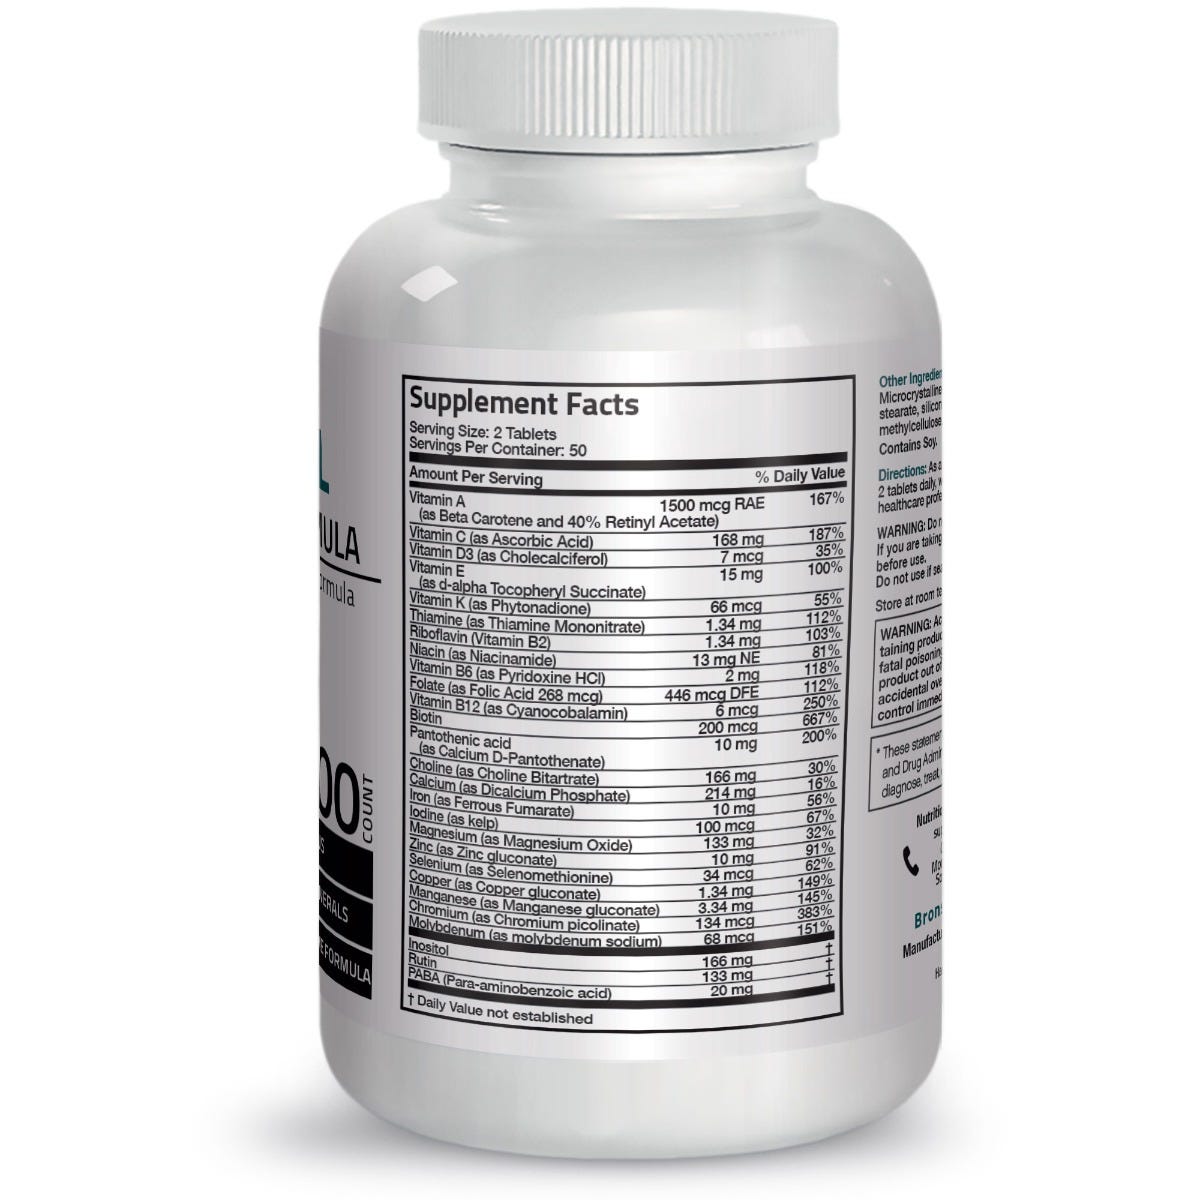 Bronson Vitamins Vitamin & Mineral Insurance Formula - 100 Tablets, Item #1A, Bottle, Back Label, Supplement Facts